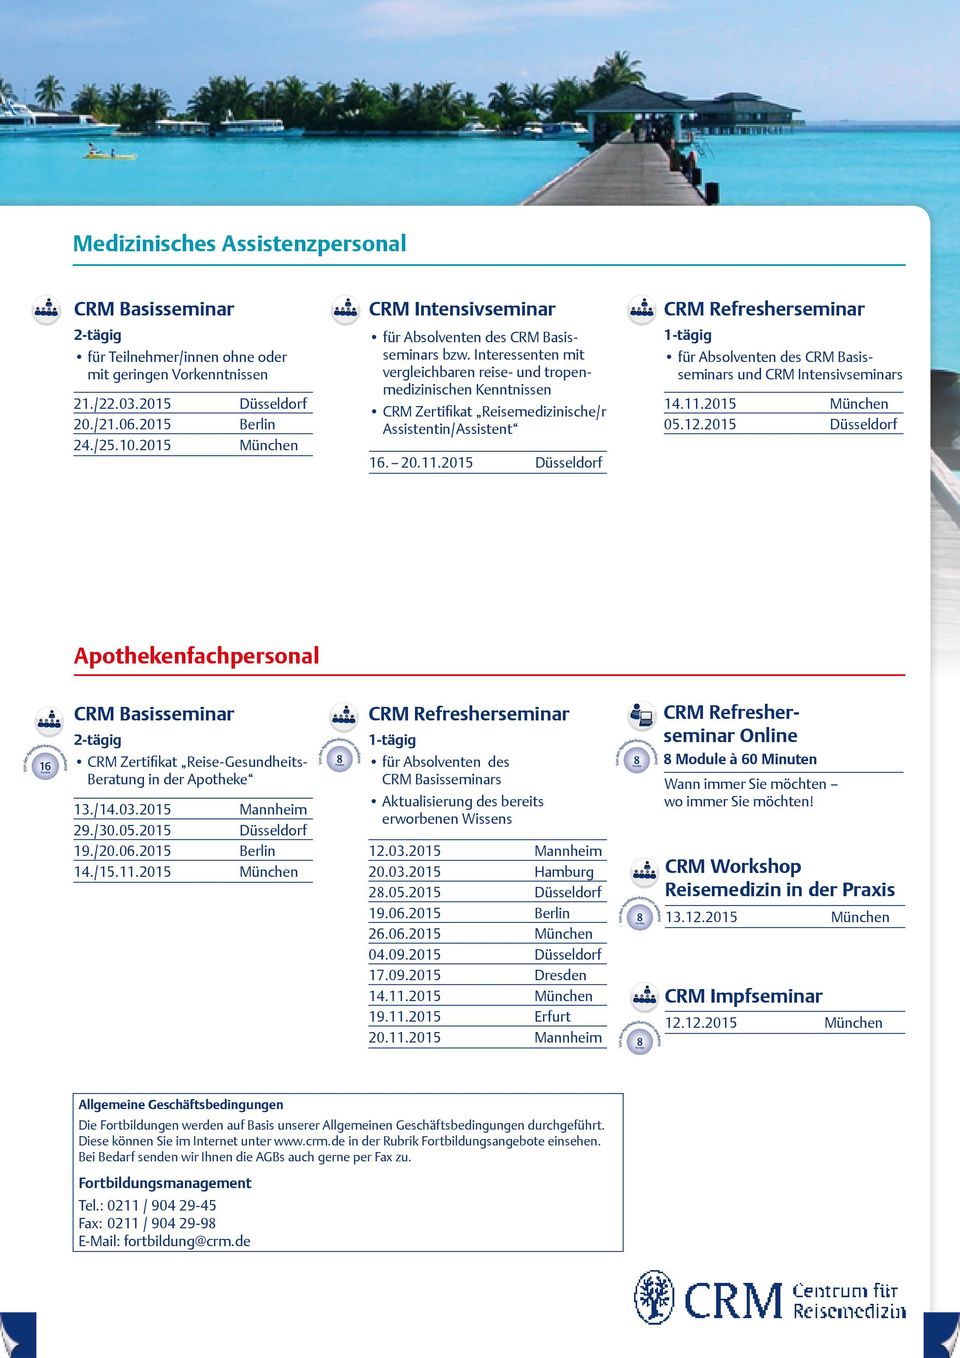 2015 Berlin CRM Zertifikat Reisemedizinische/r Assistentin/Assistent 16. 20.11.2015 für Absolventen des CRM Basisseminars und CRM Intensivseminars 14.11.2015 05.12.